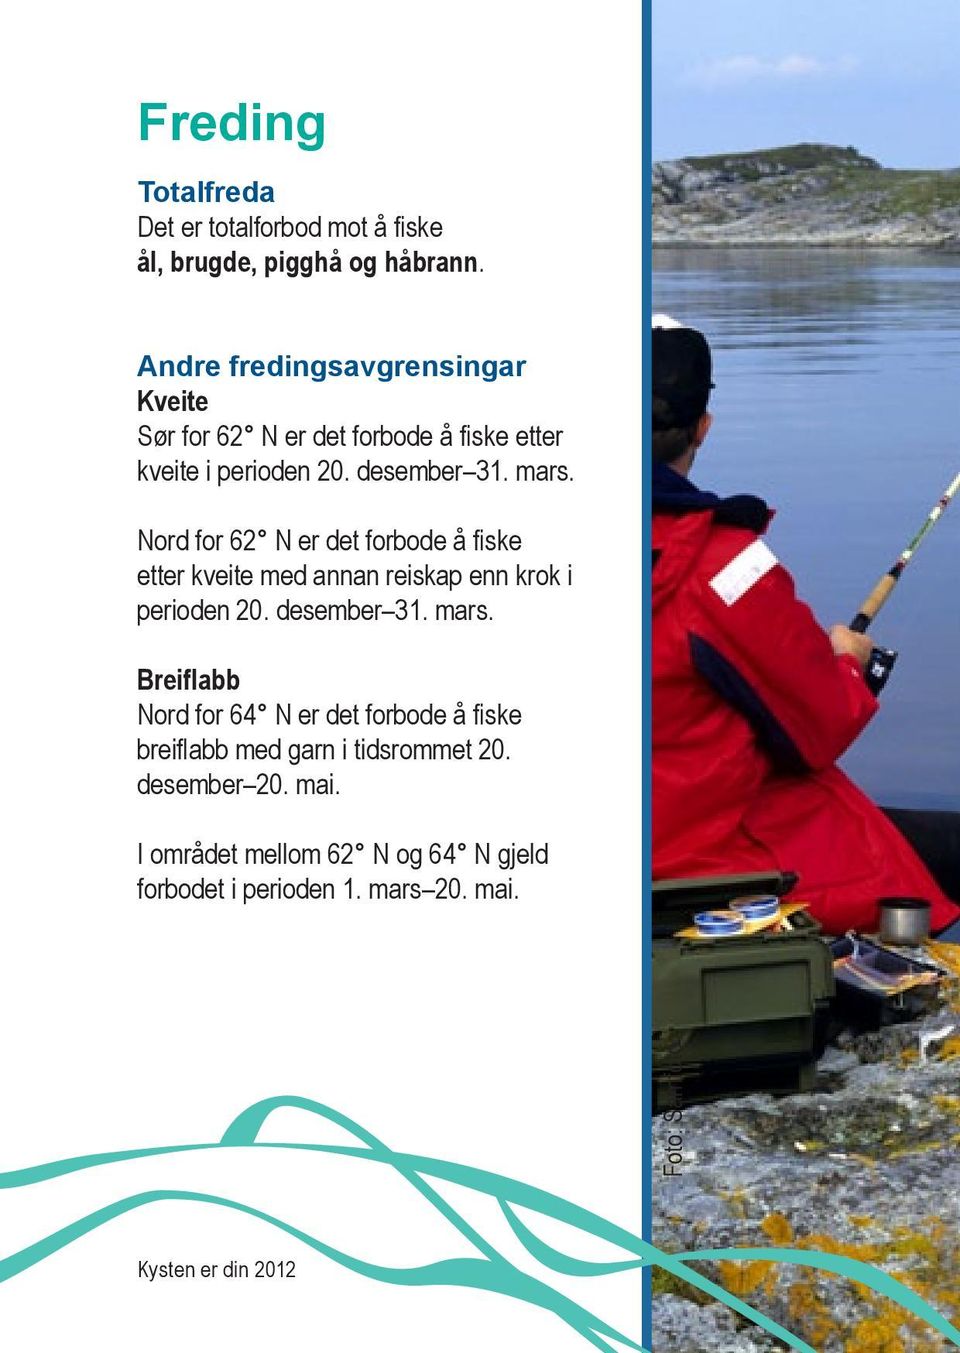 Nord for 62 N er det forbode å fiske etter kveite med annan reiskap enn krok i perioden 20. desember 31. mars.